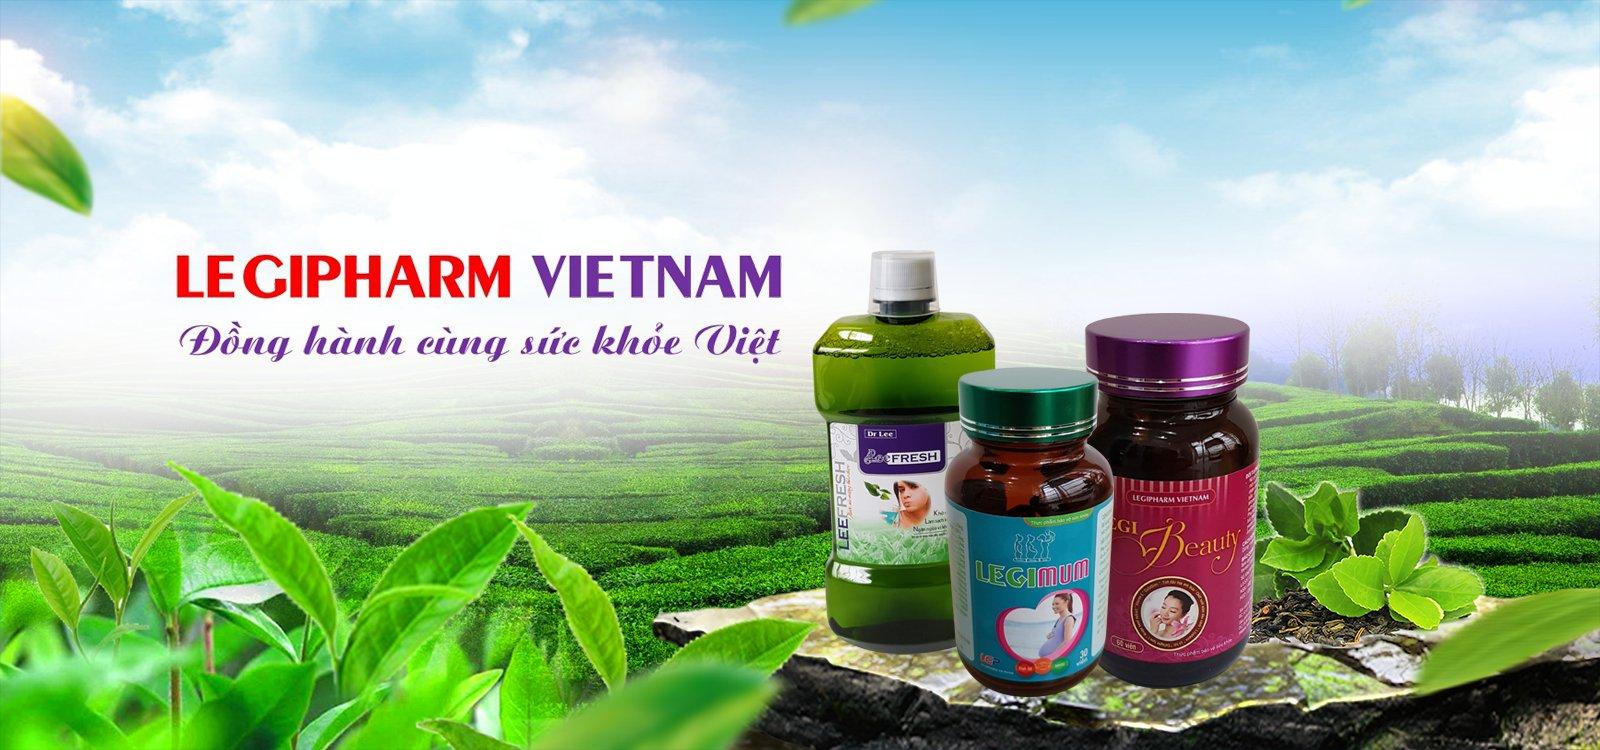 Công ty TNHH Y Dược Legipharm Việt Nam